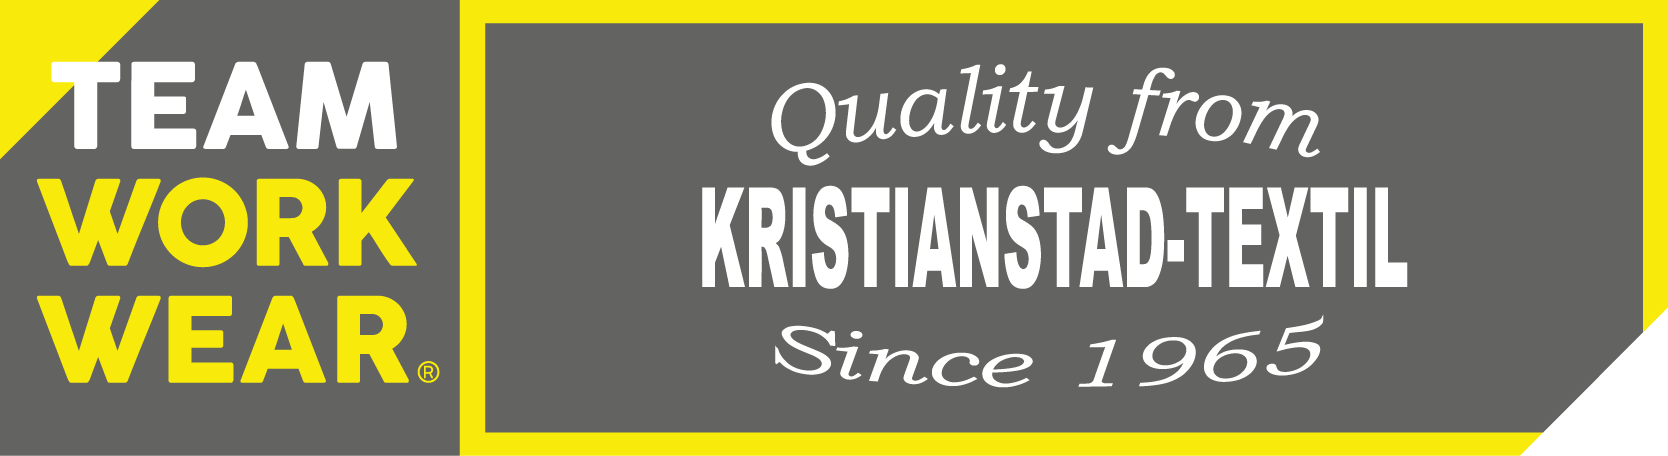 Kristianstad Textil - Arbetskläder, skor, skydd, profil & tryckeri